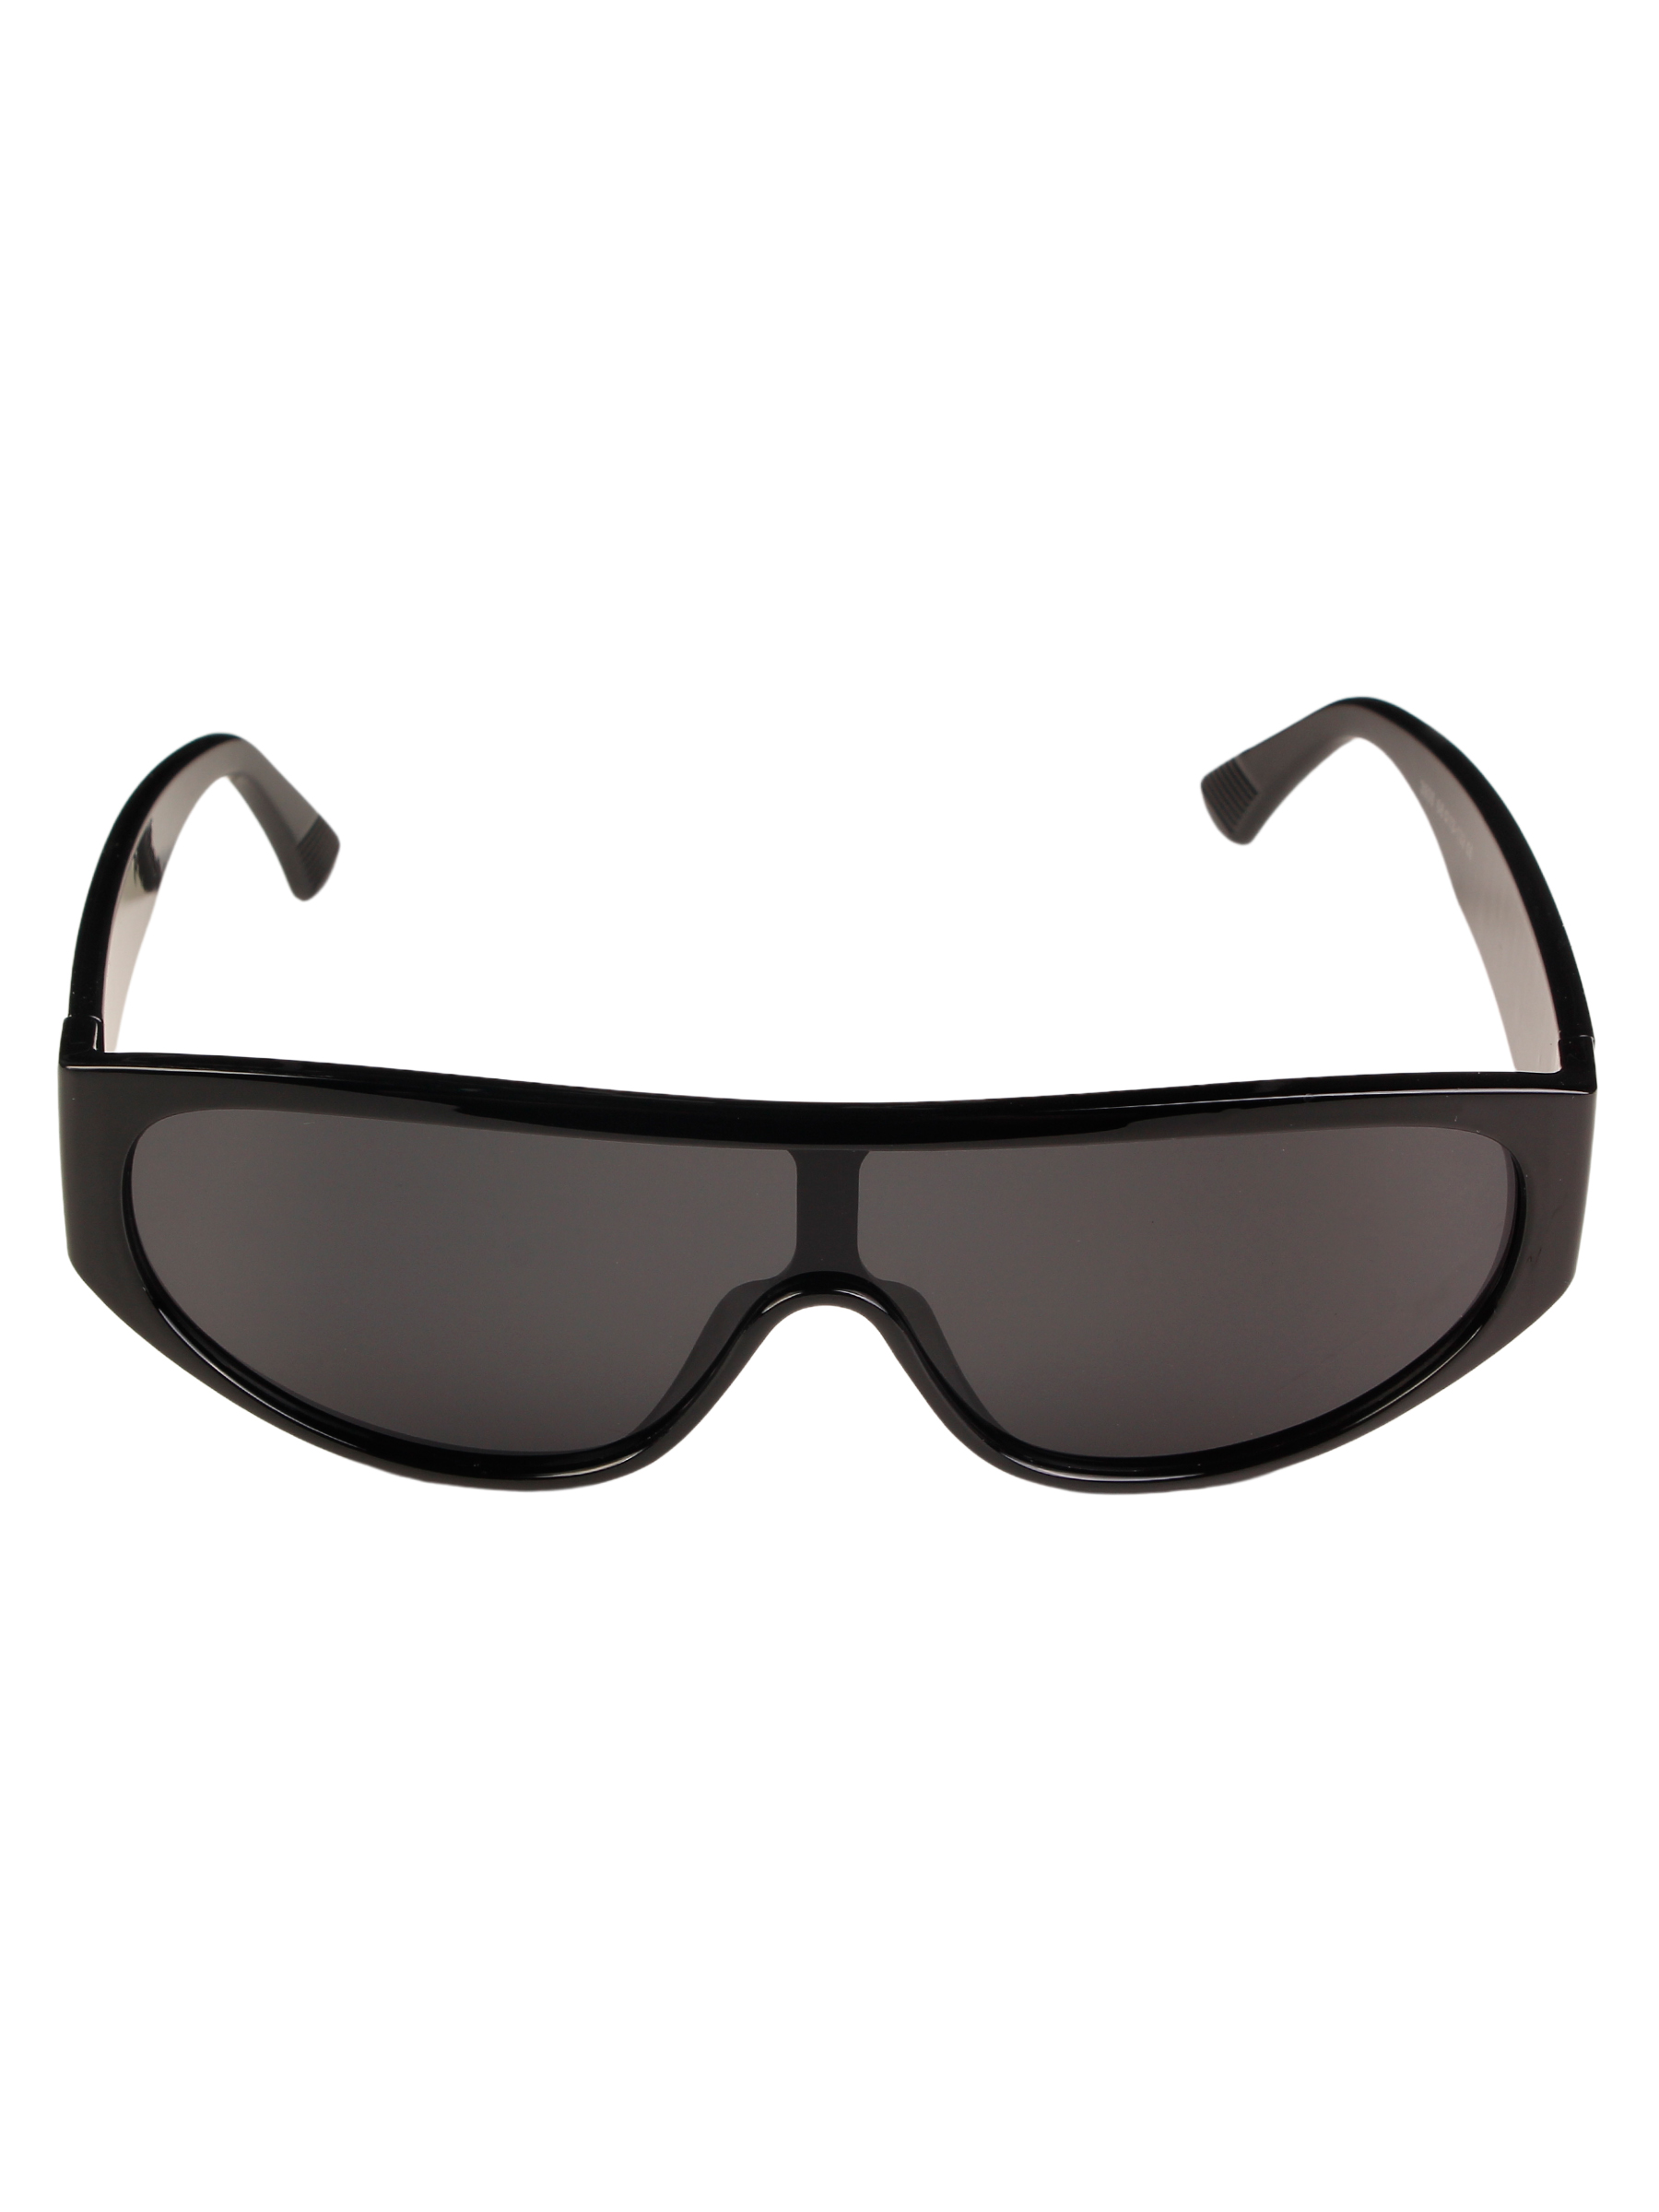 Солнцезащитные очки женские Pretty Mania DD036 черные